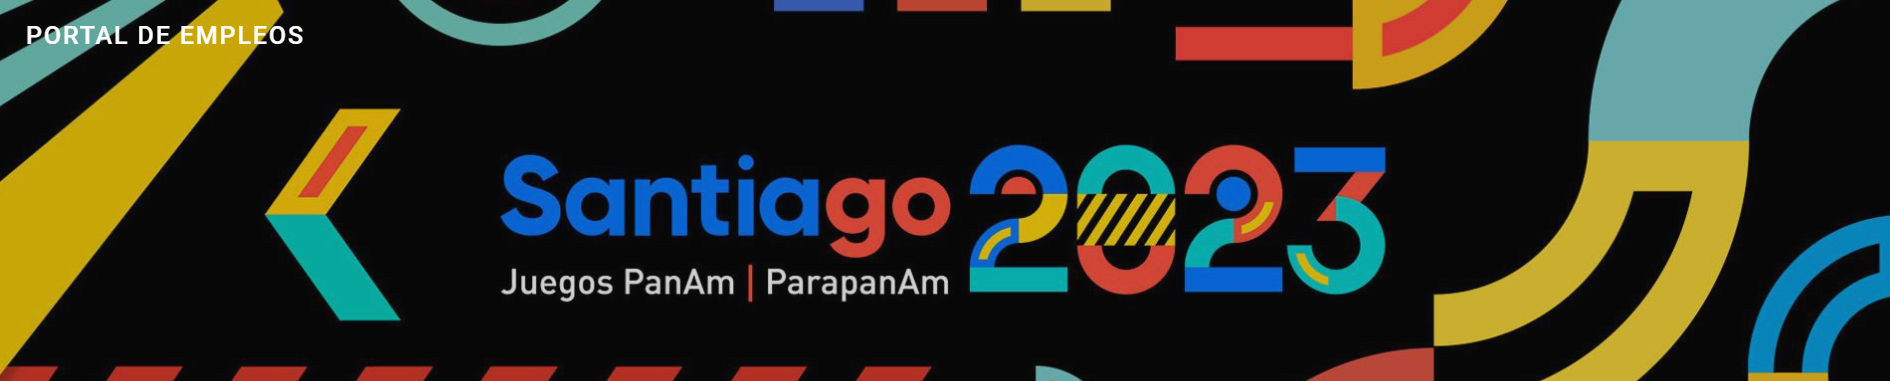 Ofertas Laborales Disponibles para los Juegos Panamericanos Santiago 2023: ¡Postula Ahora!